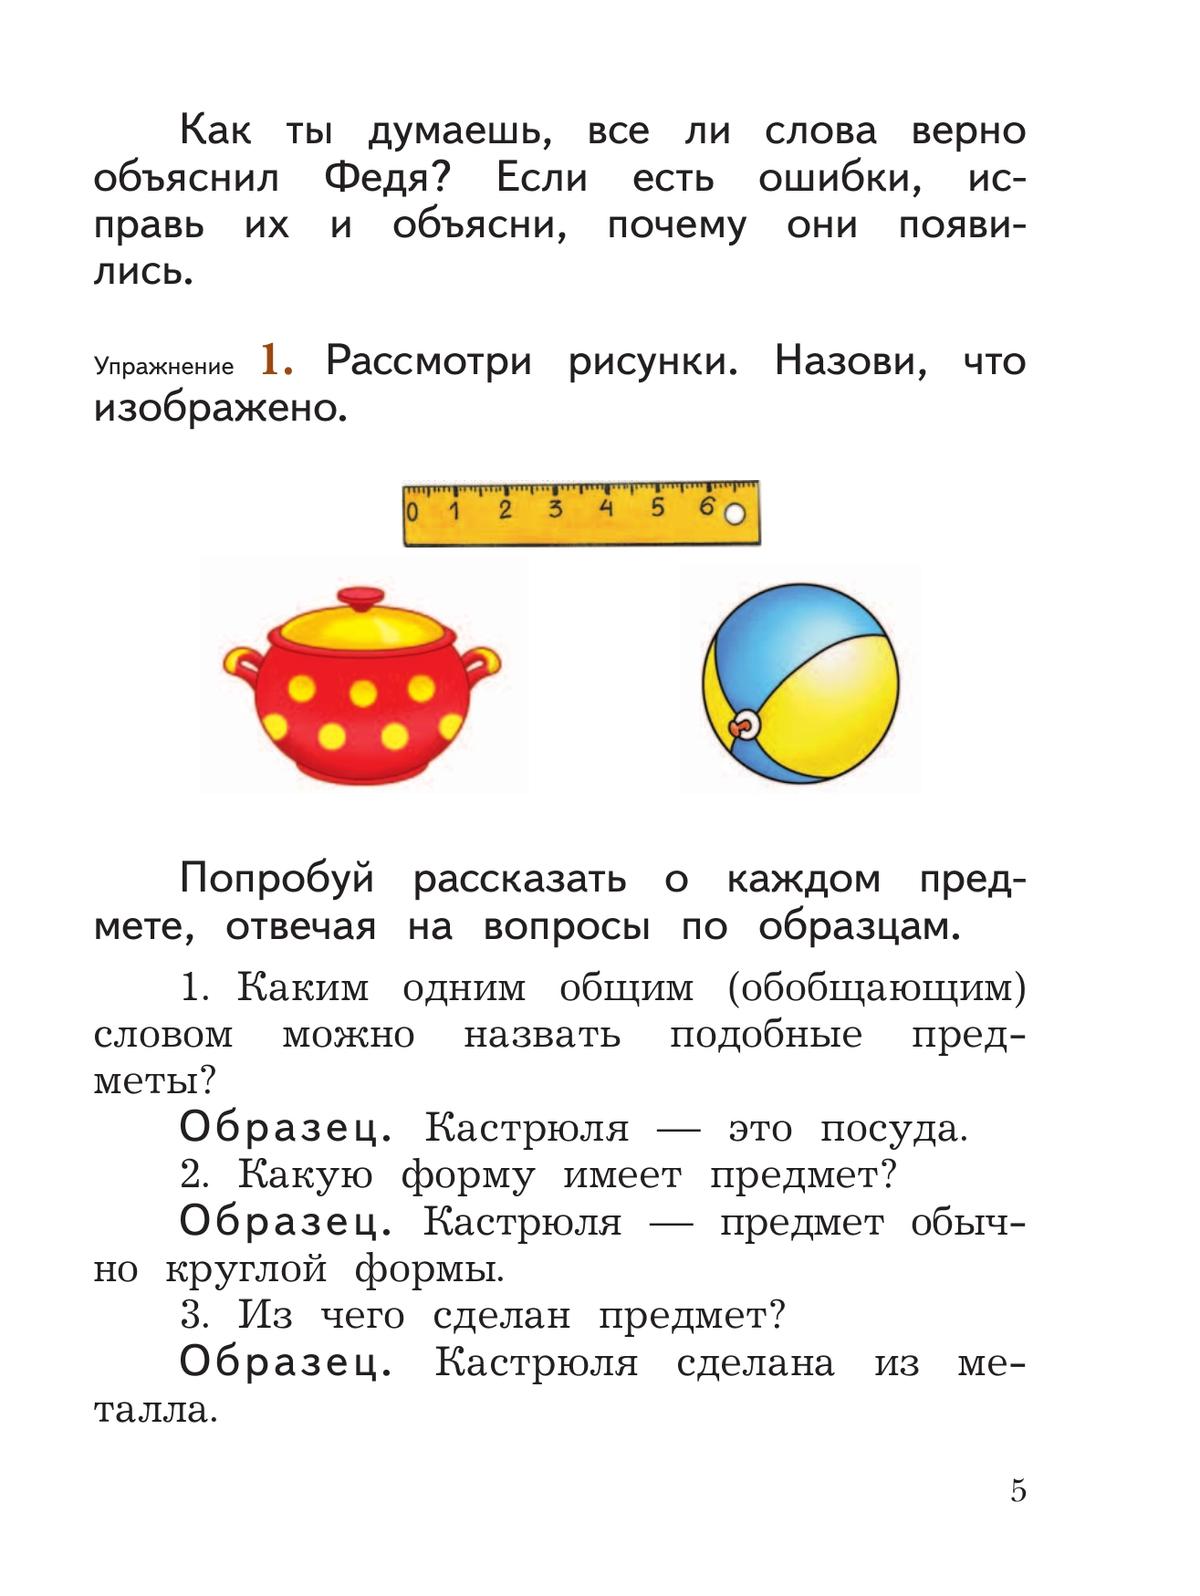 Русский язык. 2 класс. Учебное пособие. В 2 ч. Часть 2 9